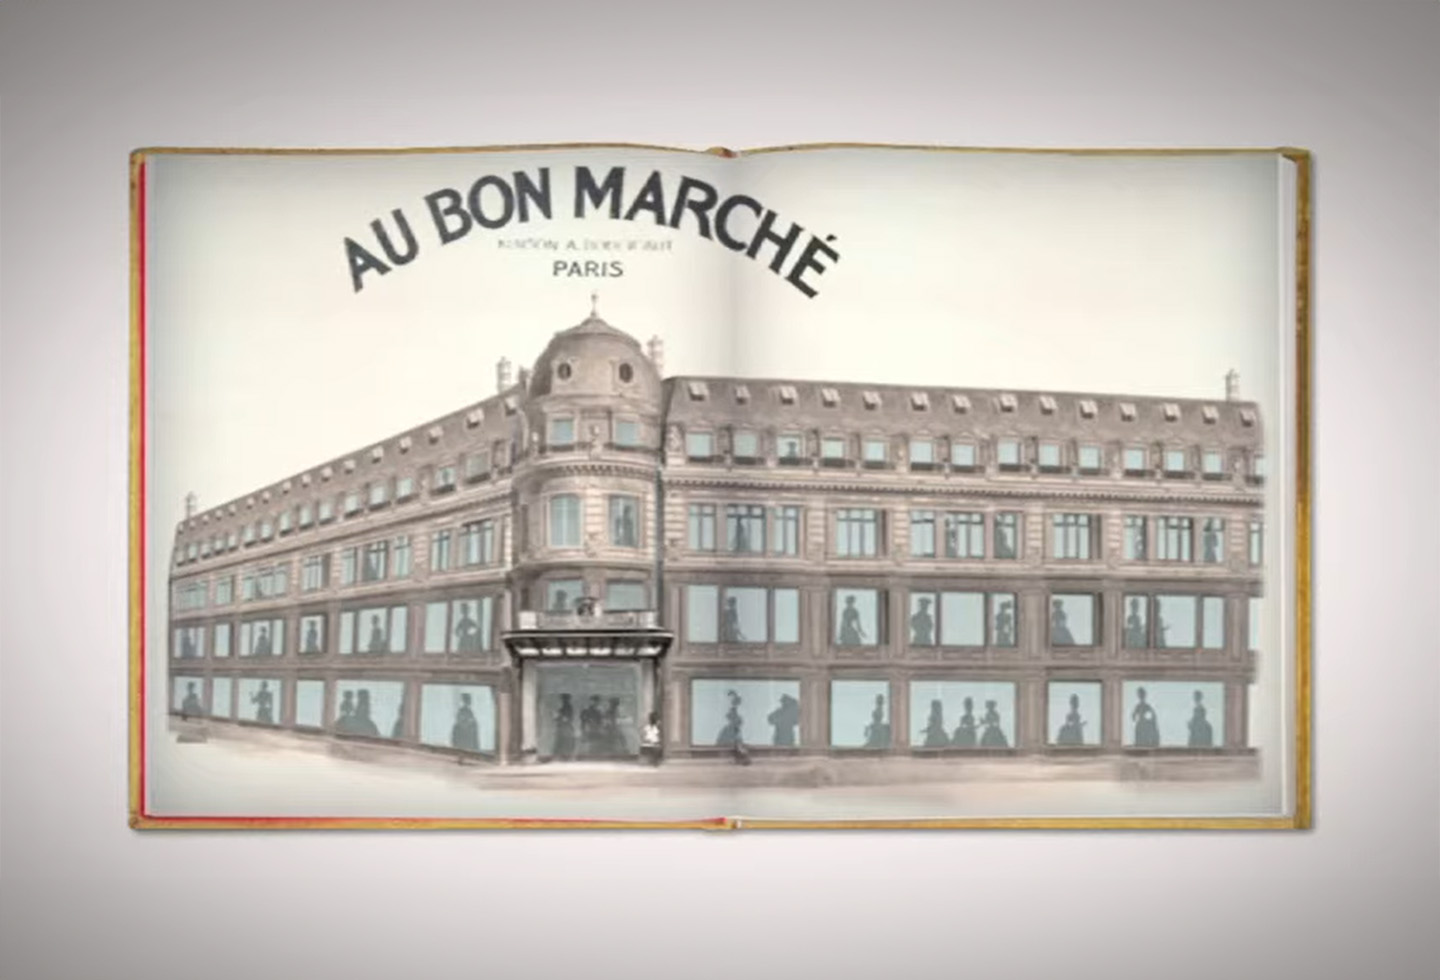 لو بون مارشيه Le Bon Marché